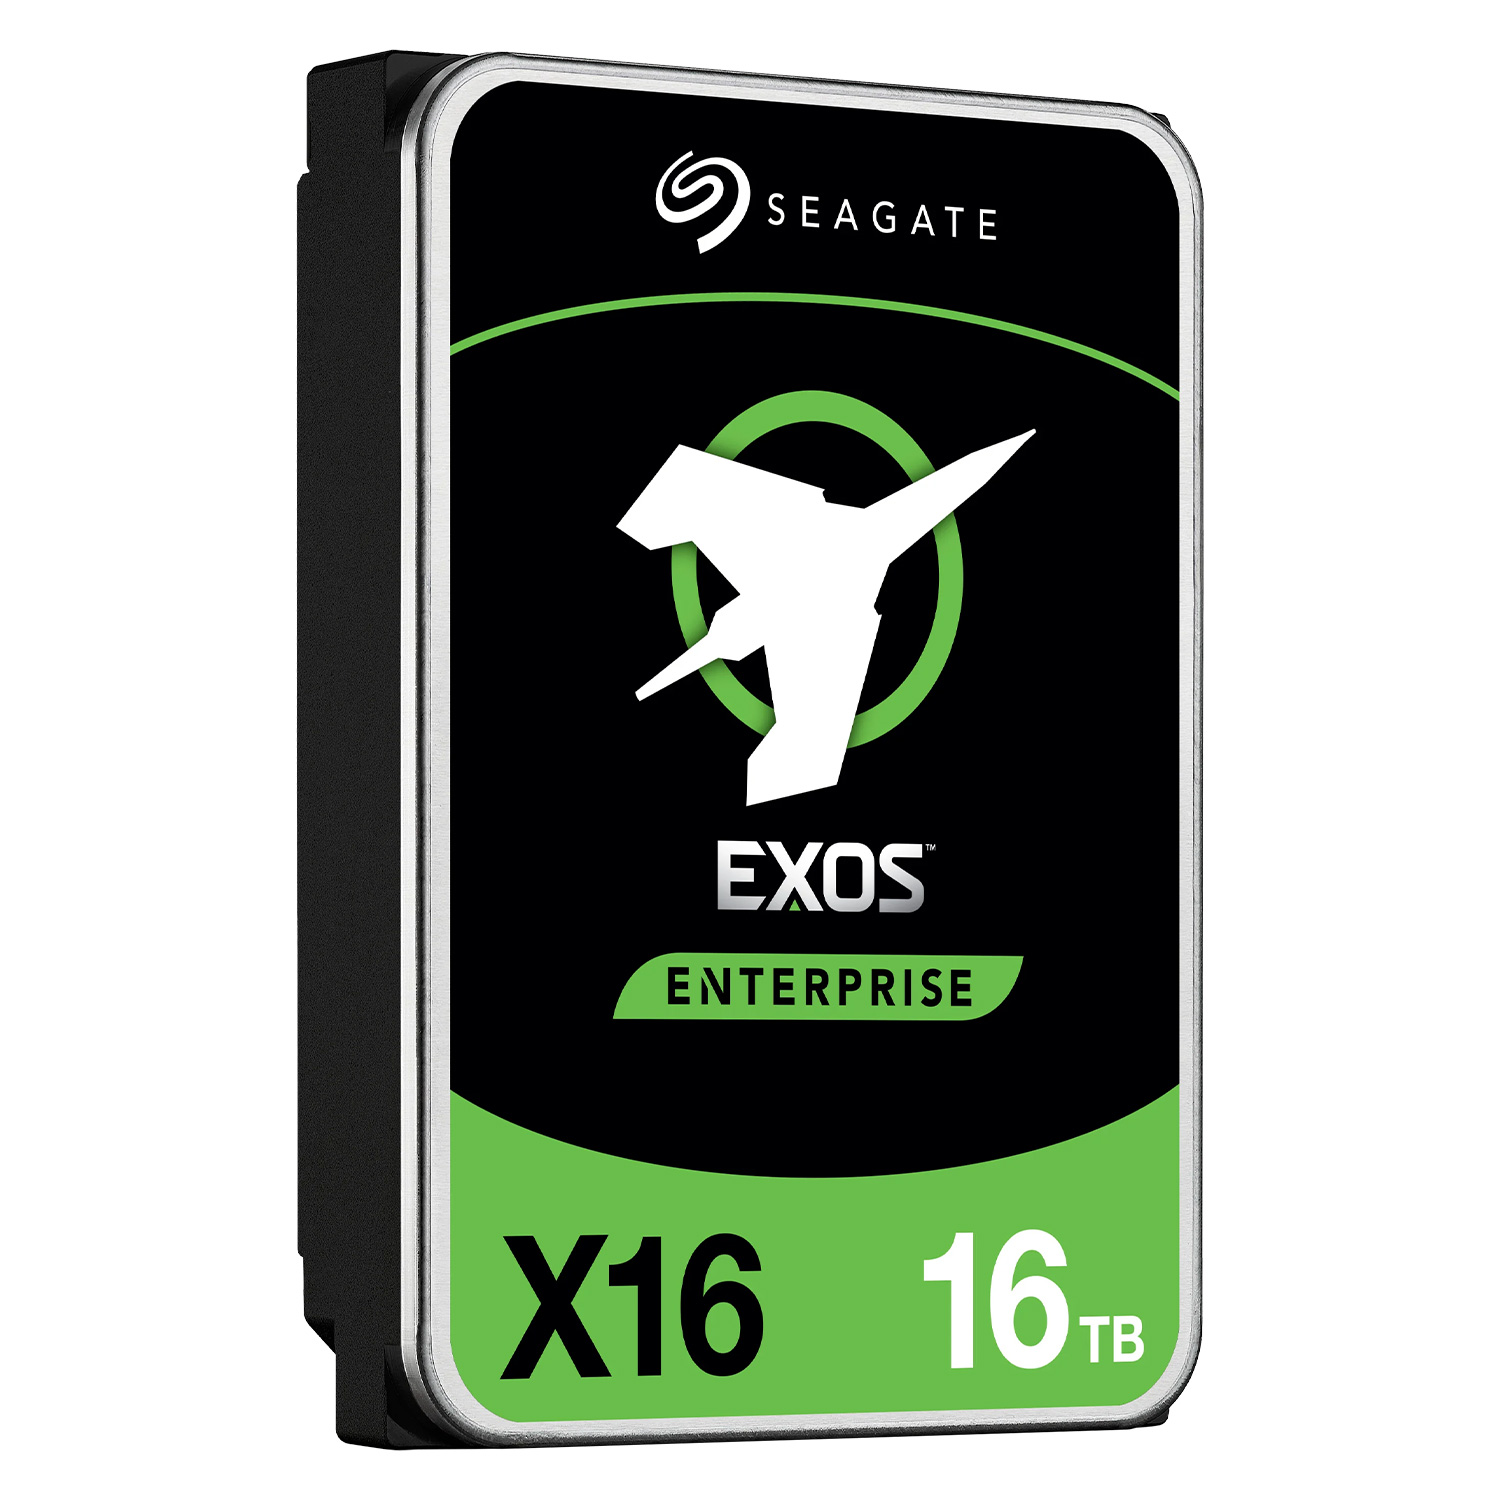 HD Seagate 16TB Exos X16 Enterprise / 3.5" / Sata 3 / 7200RPM - (ST16000NM001G)
